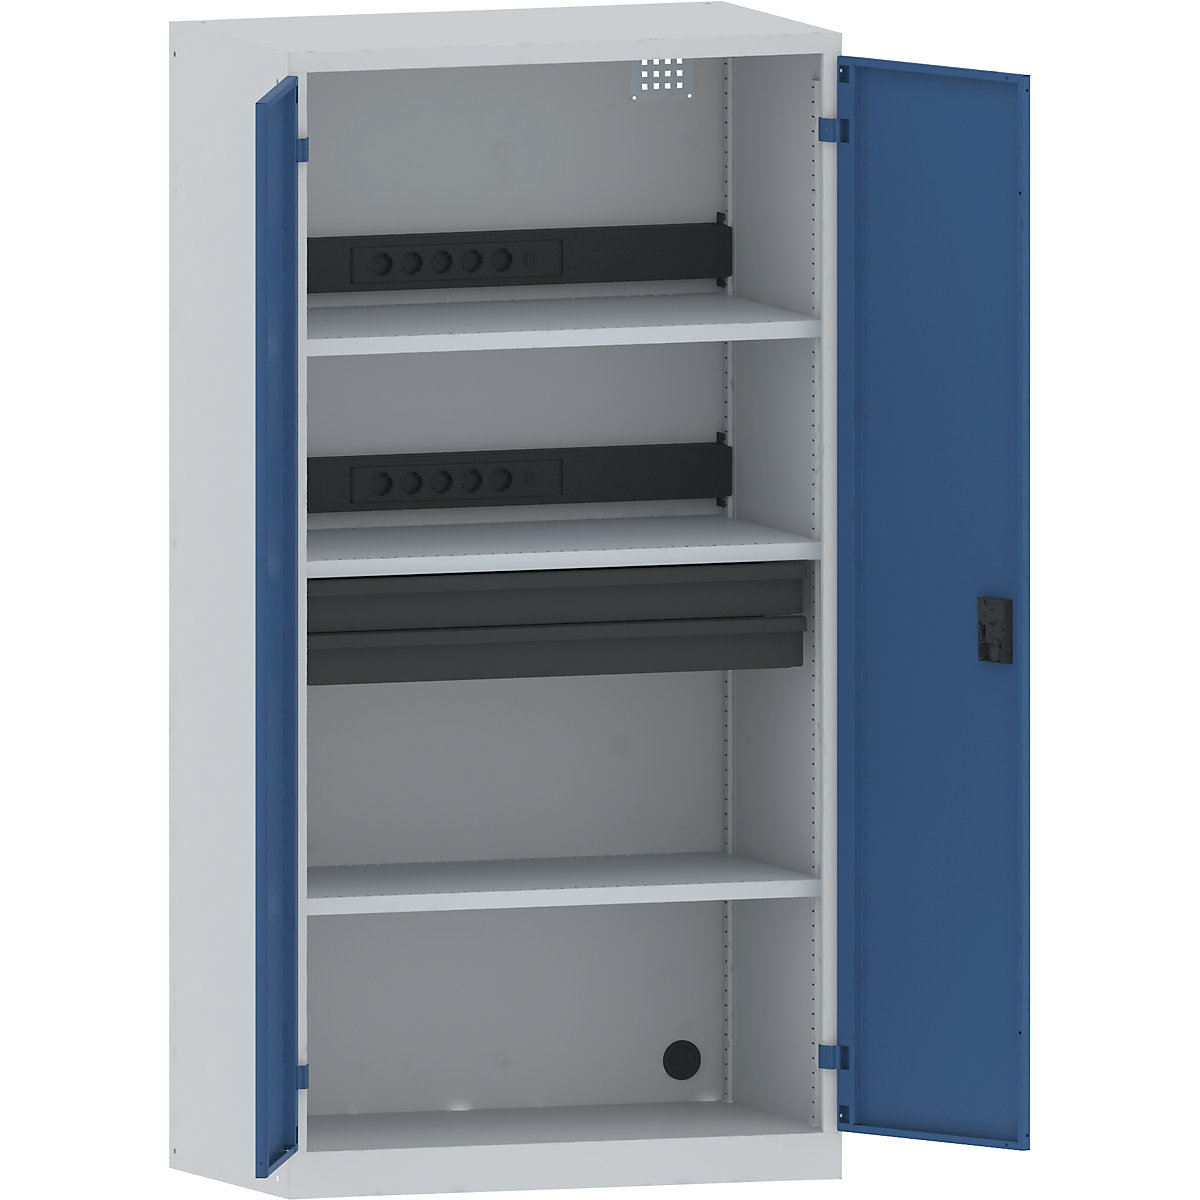 LISTA – Armario cargador de baterías, 3 baldas, 2 cajones, puertas de chapa maciza, gris / azul